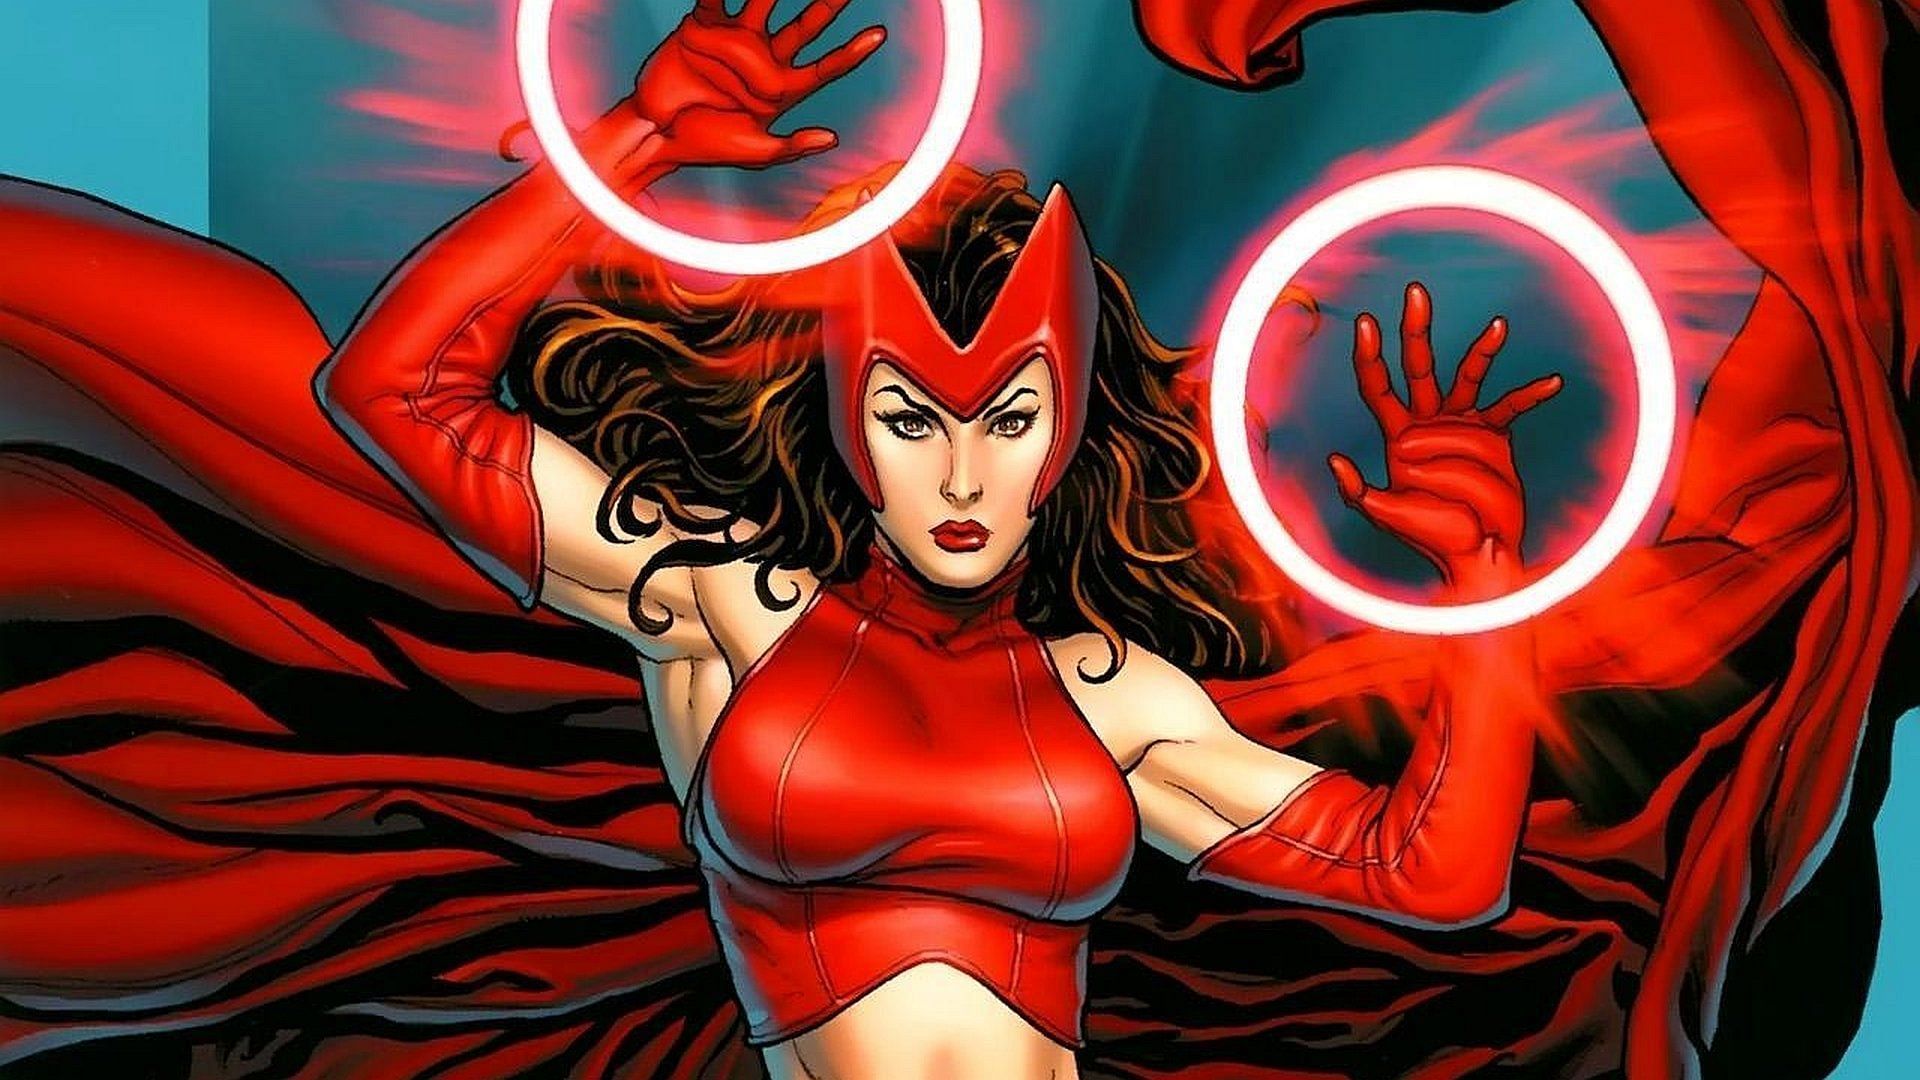 Wanda Maximoff/Scarlet Witch (Image via Marvel)